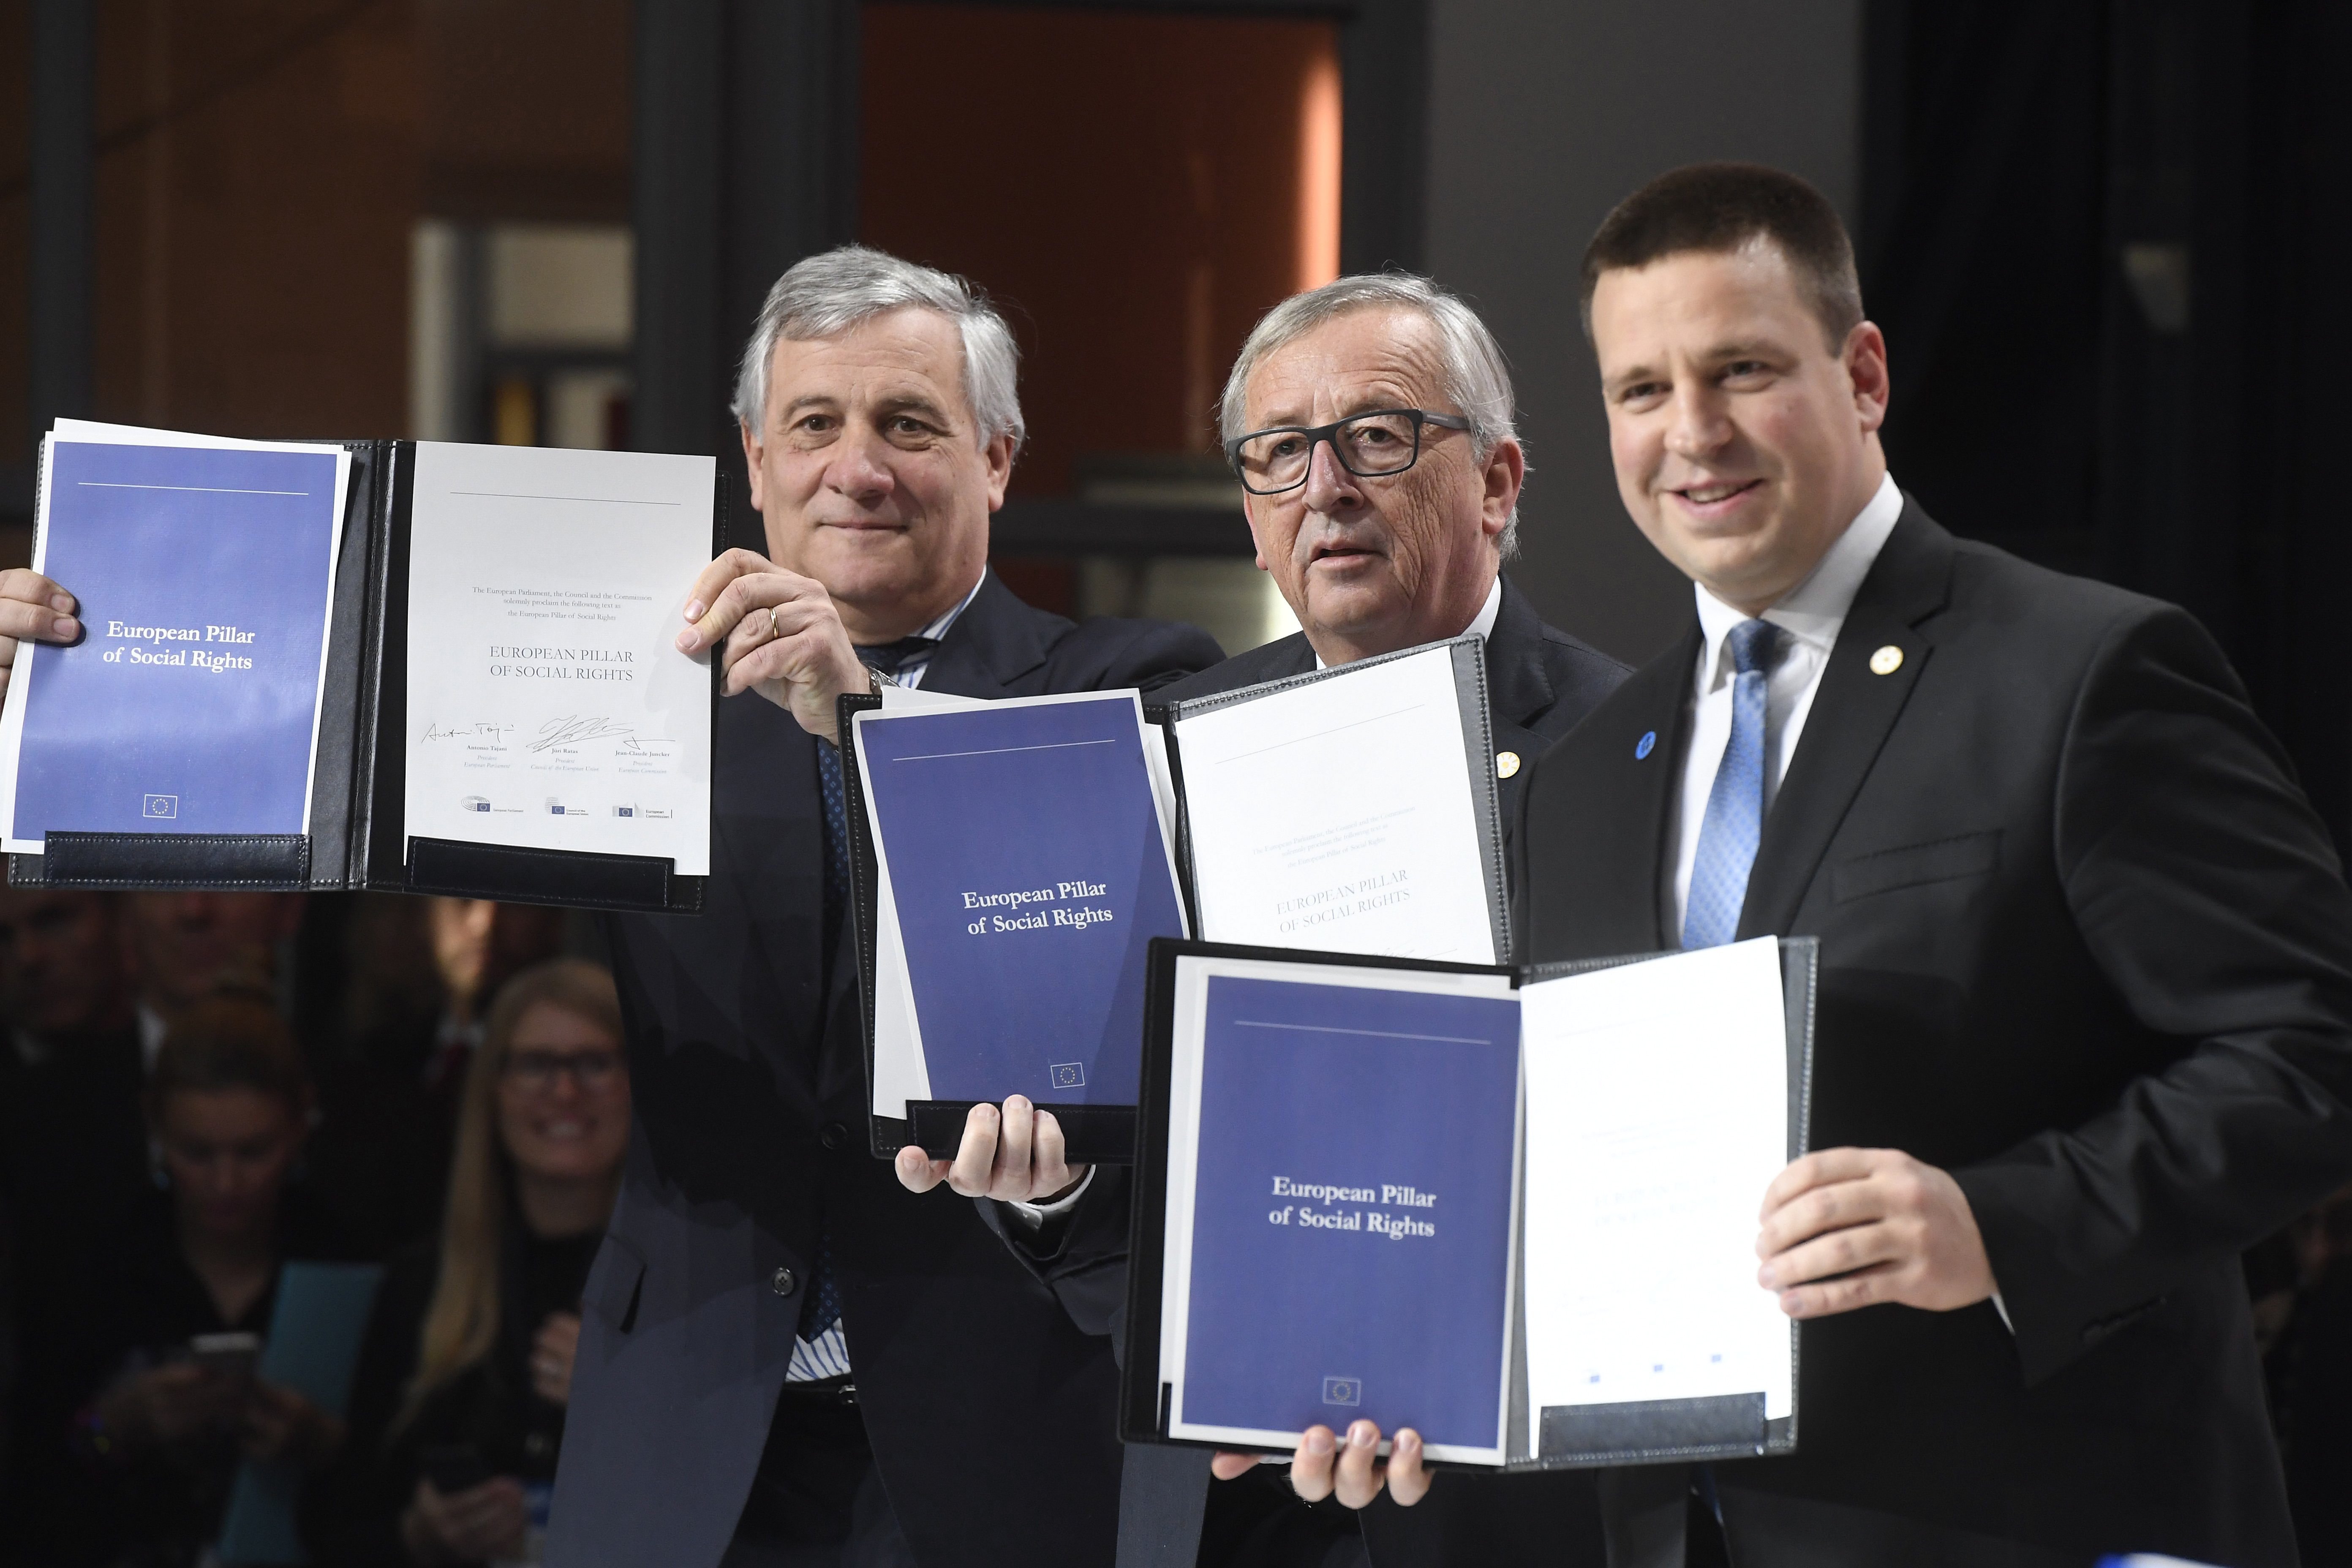 Az EU-s vezetők aláírták a szociális jogok európai pillérét létrehozó nyilatkozatot